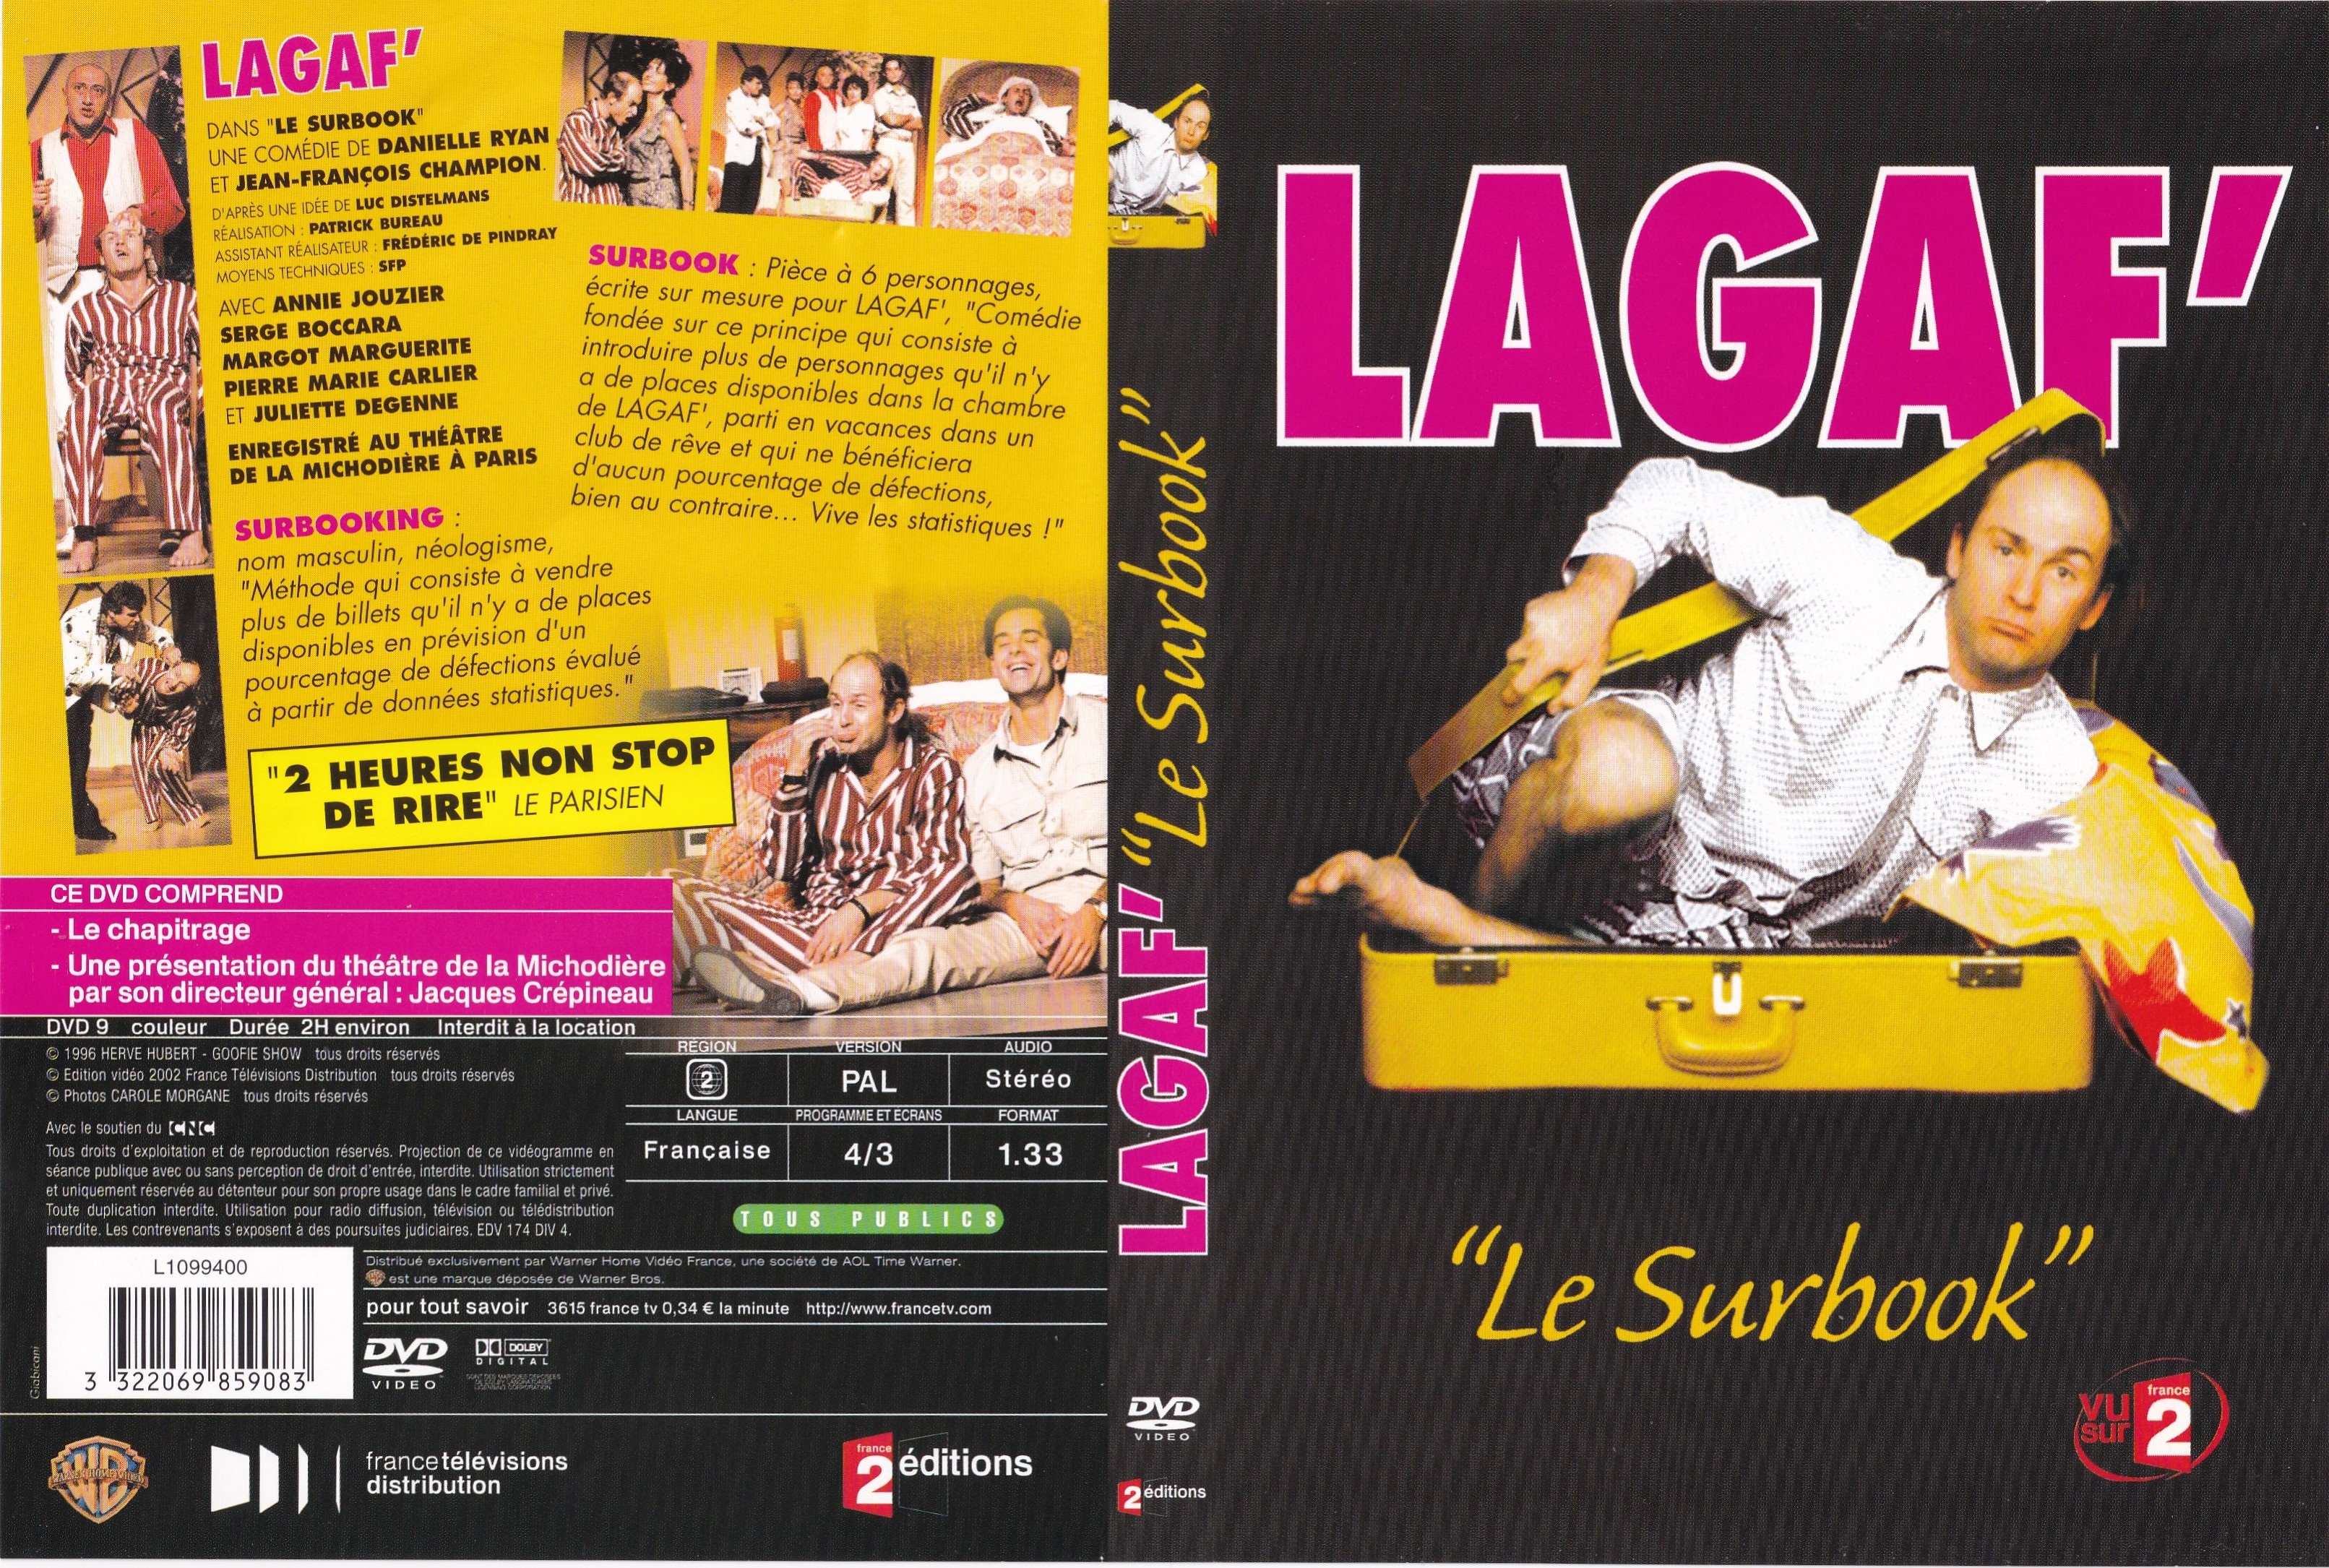 Jaquette DVD Lagaf - Le Surbook